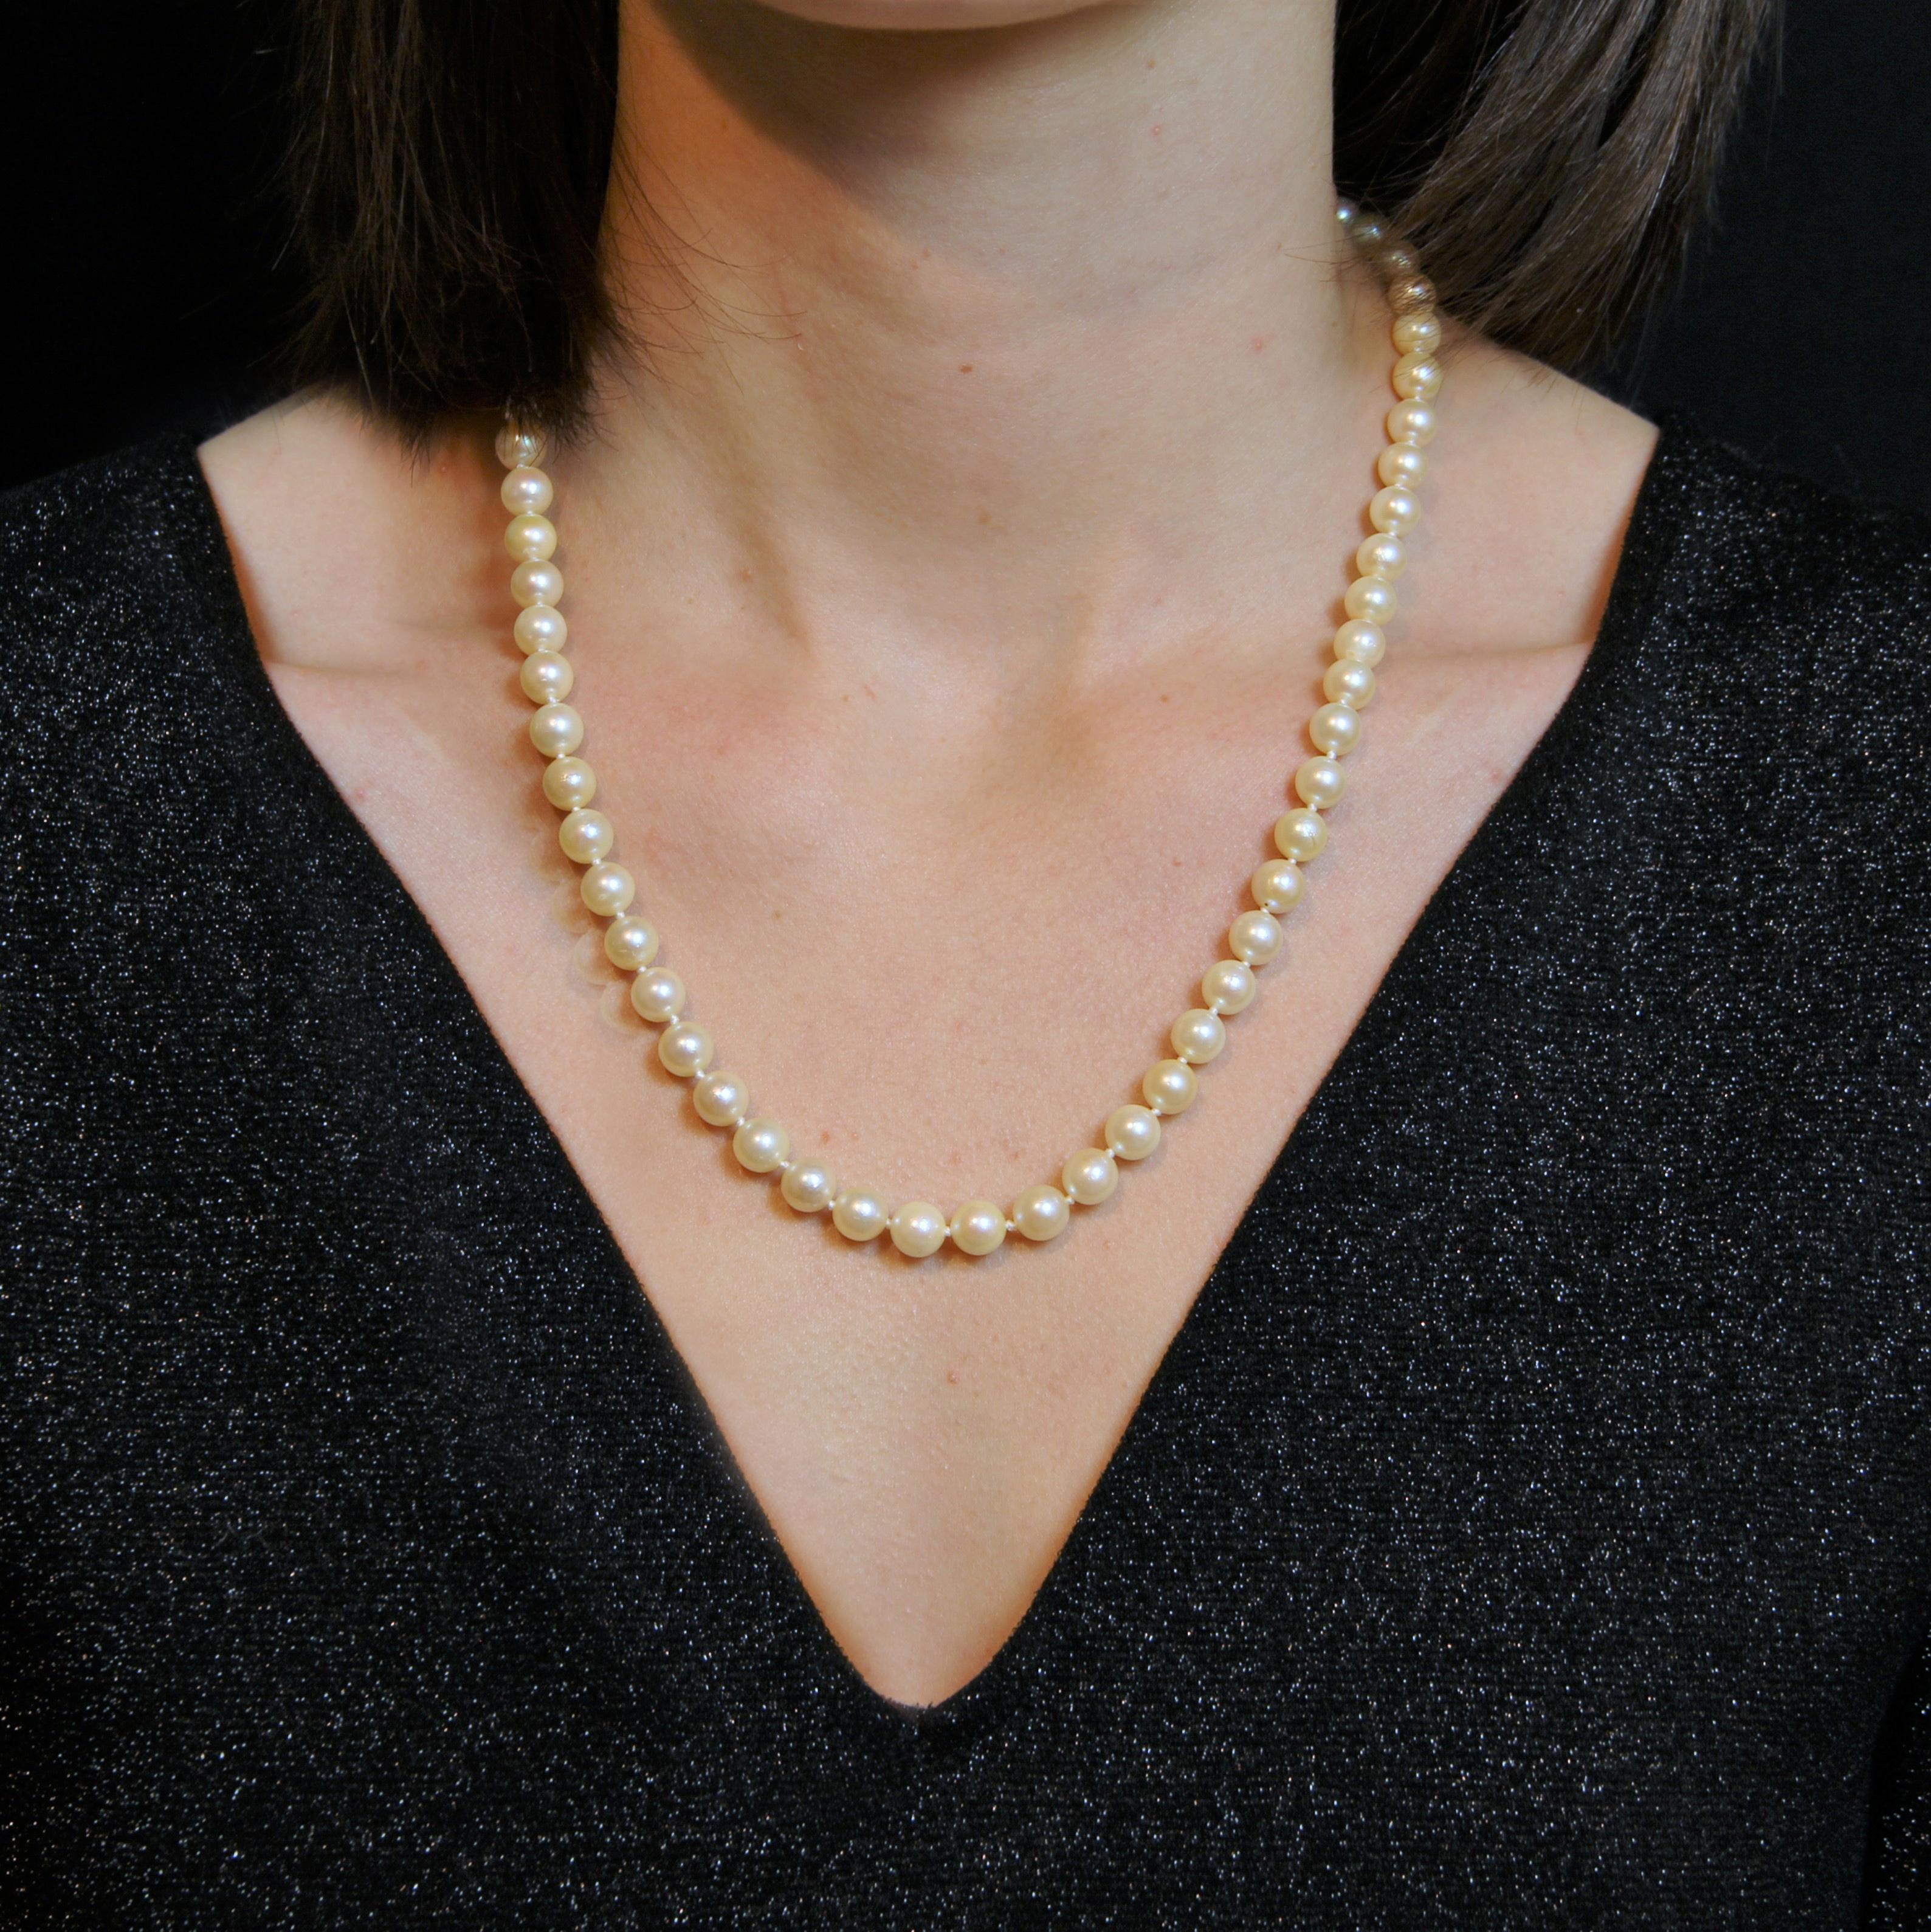 Collier composé d'une rangée de perles de culture de taille presque identique. Le fermoir est caché dans la perle à la fin. La chaîne de sécurité avec anneau à ressort sécurise le fermoir.
Diamètre des perles : 6,5/7 à 7,5/8 mm.
Longueur : 53,5 cm